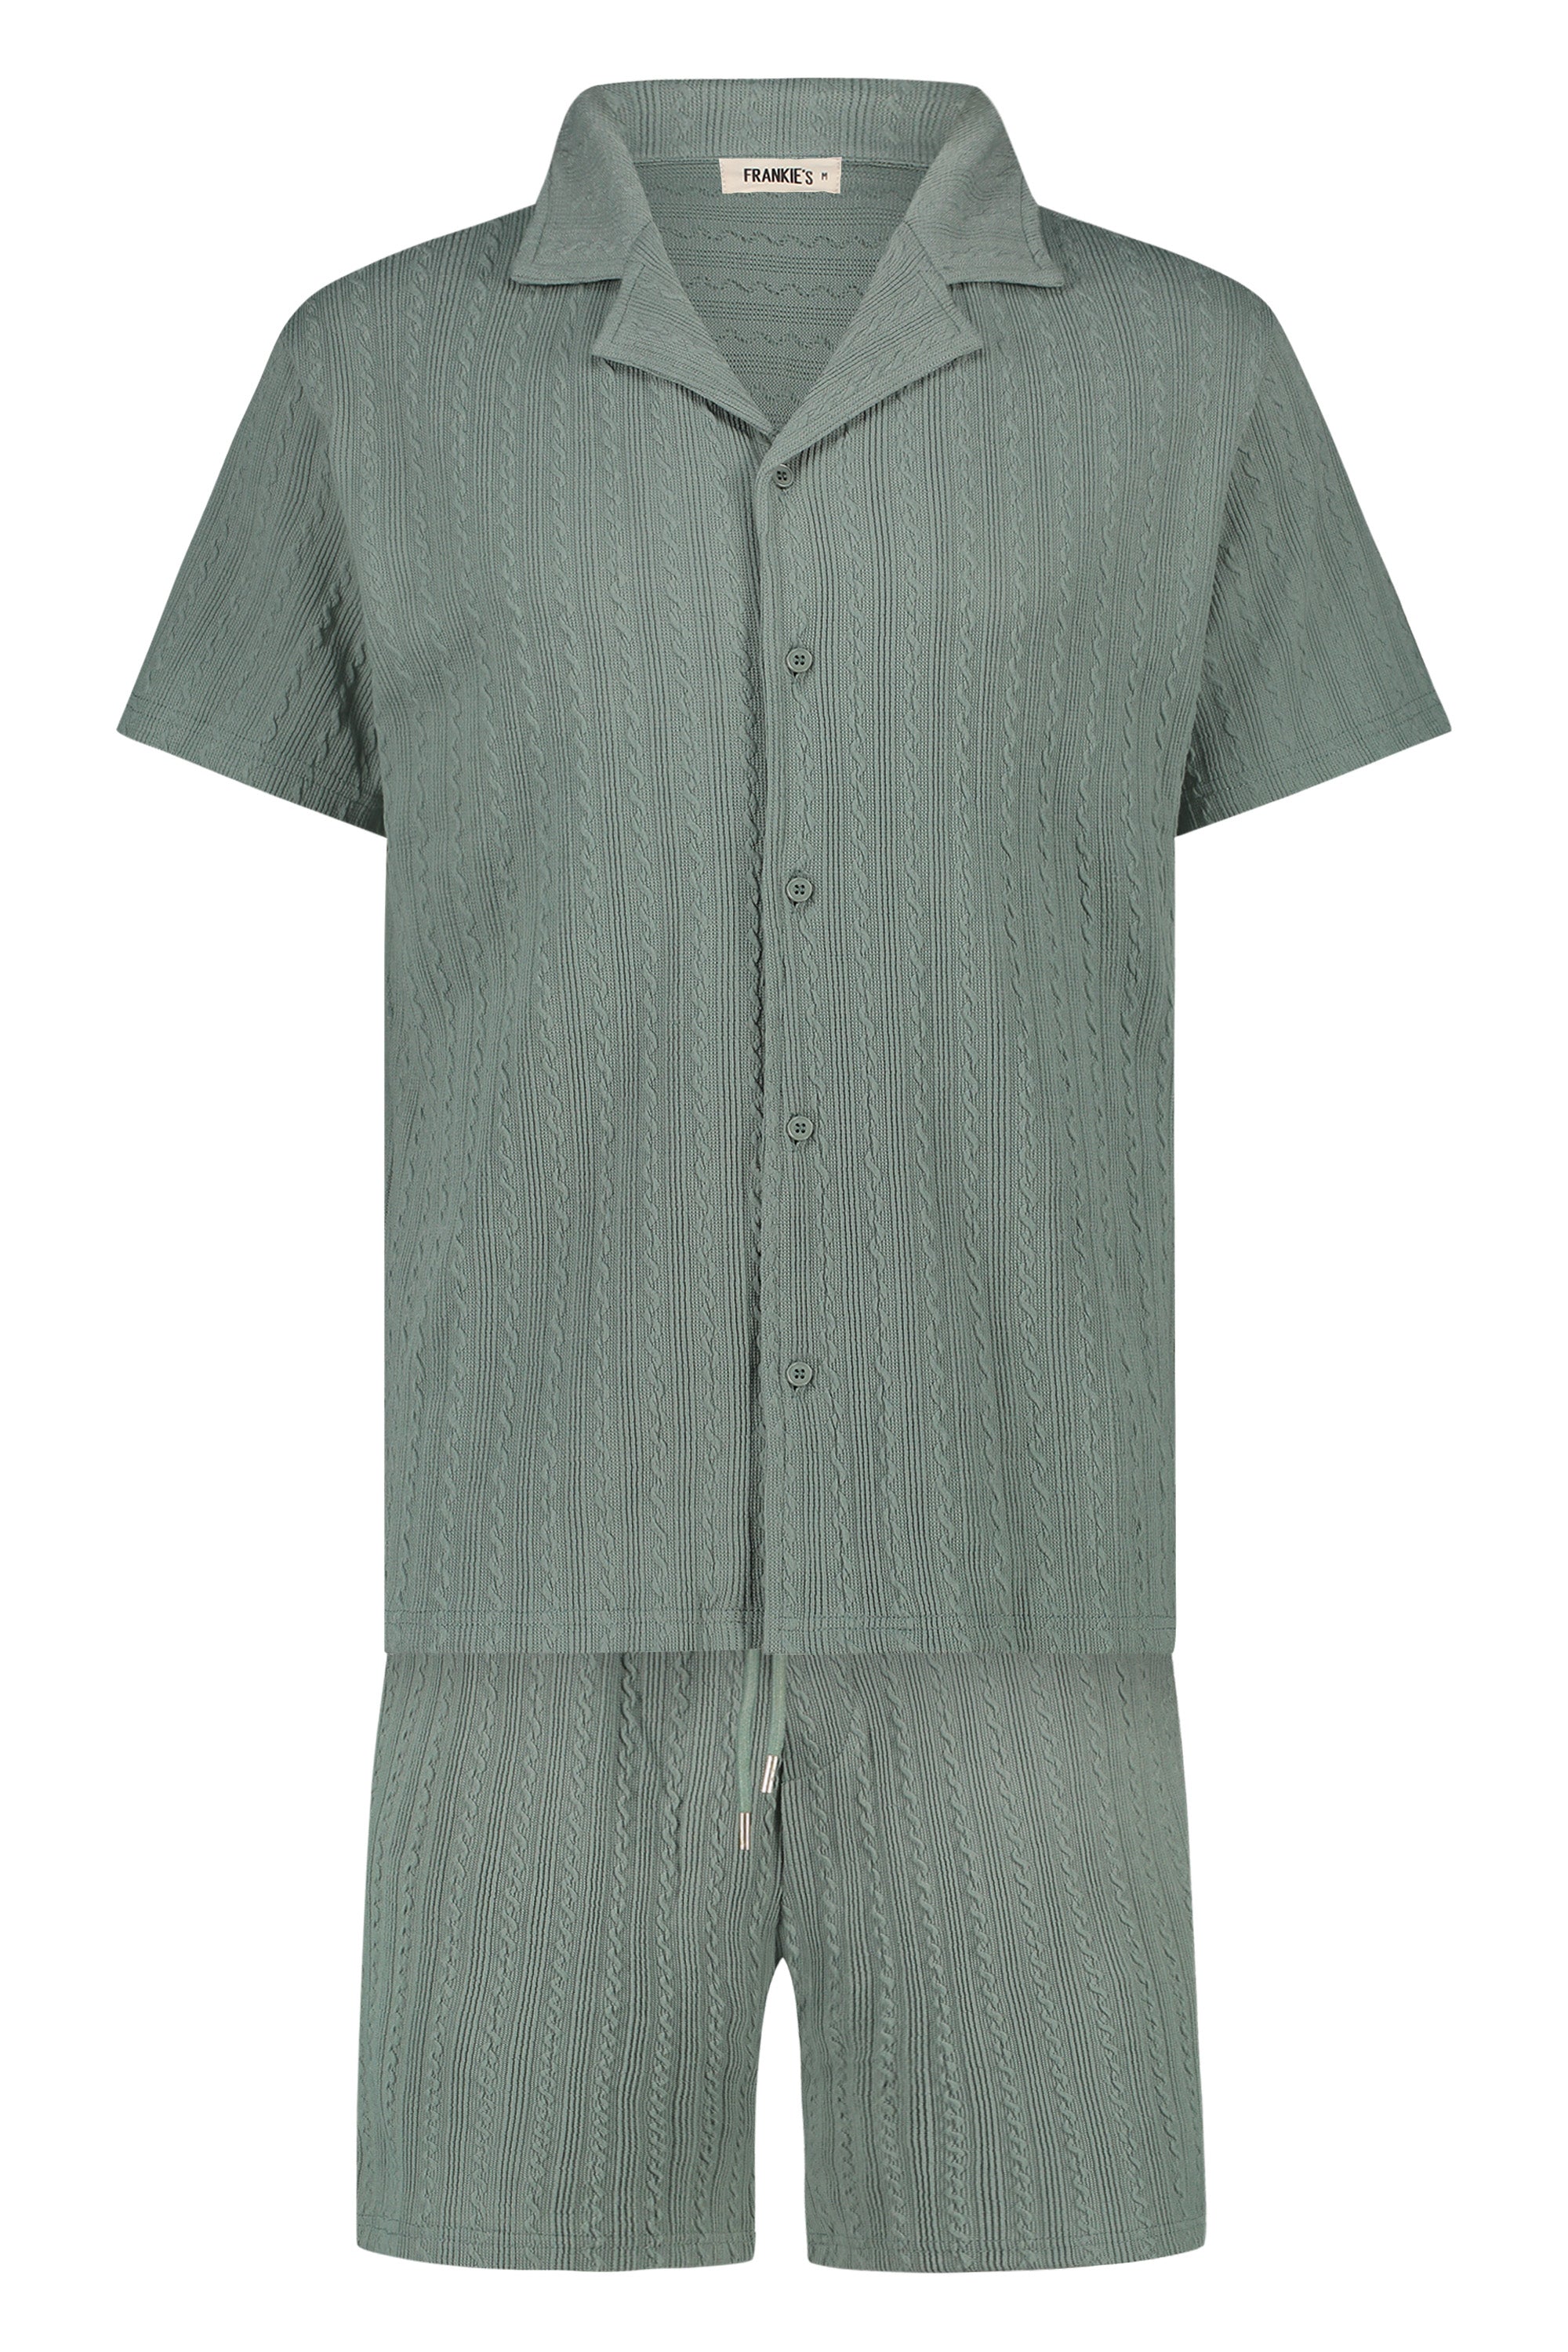 Summer set Ushuaia shirt & short mint green